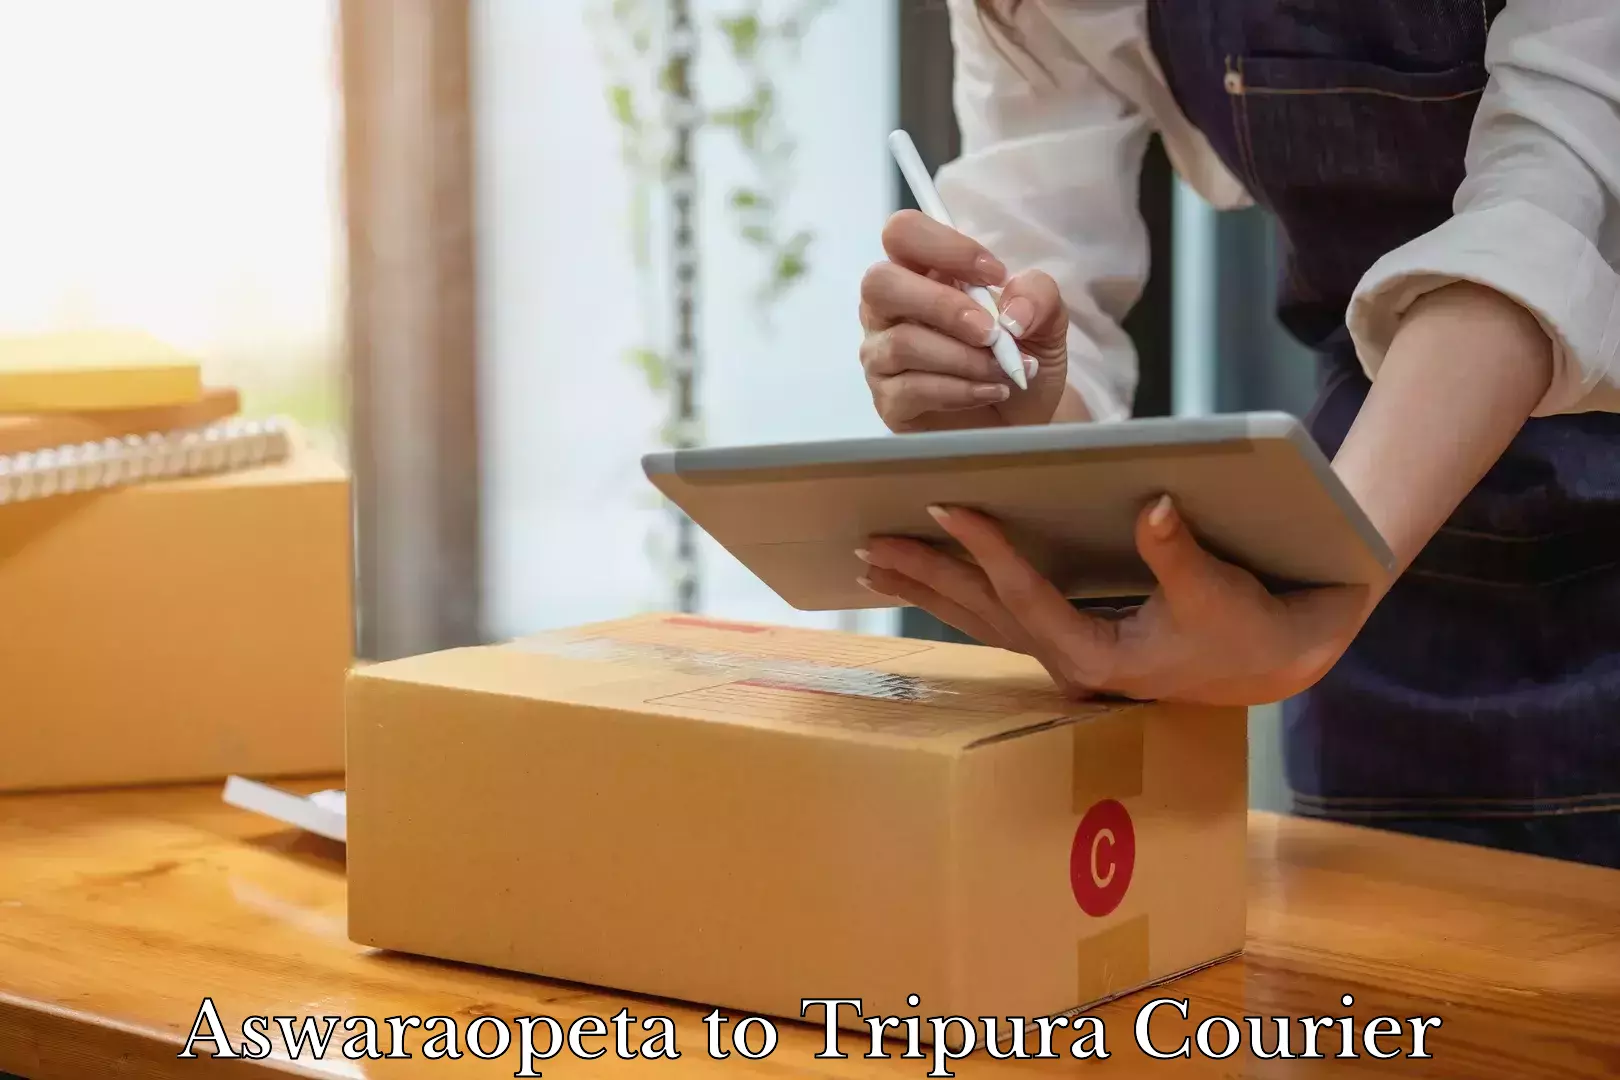 Online luggage shipping booking Aswaraopeta to Manughat